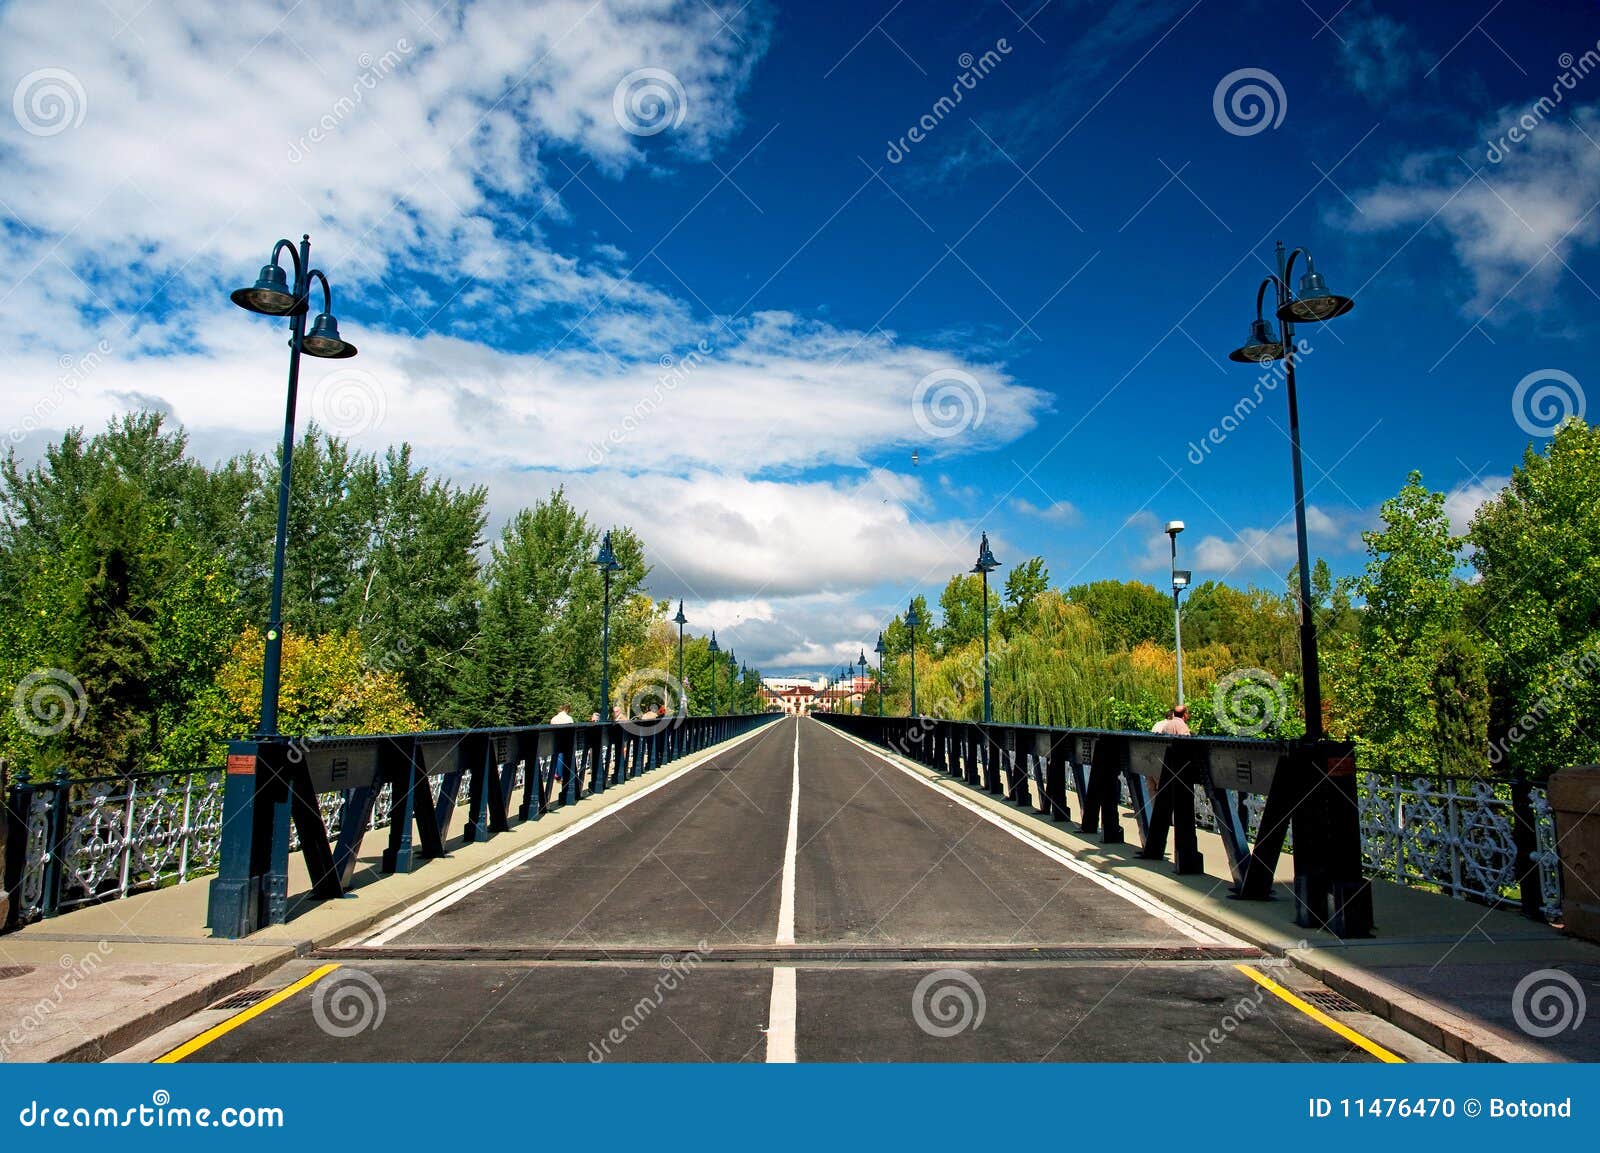 bridge of logroÃÂ±o